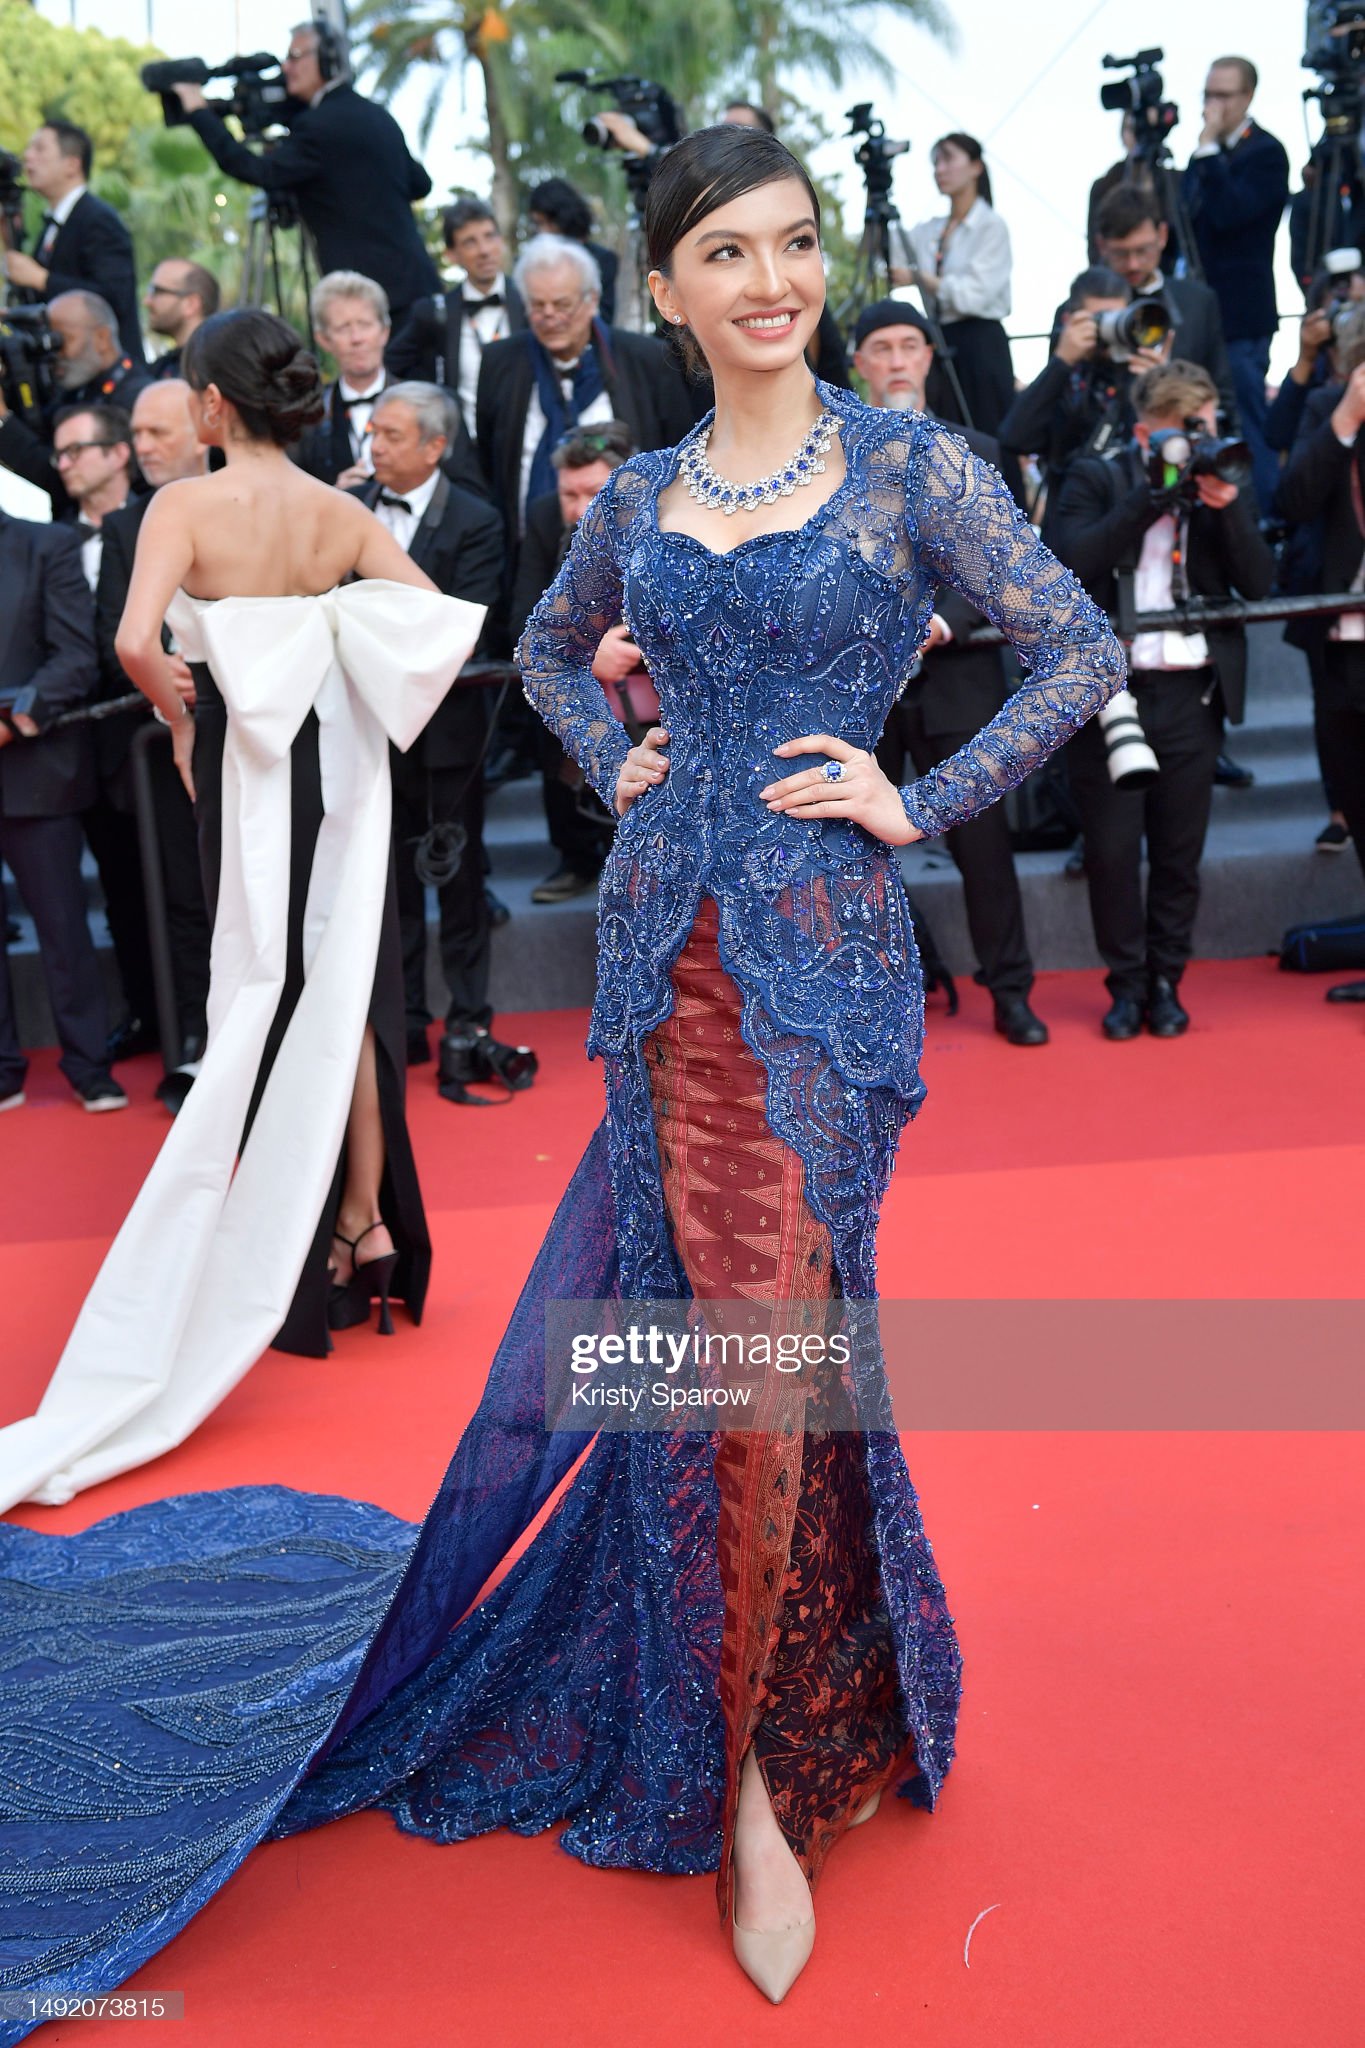 Thảm đỏ Cannes 2023 ngày 6: Jennifer Lawrence - Gigi Hadid đẹp choáng ngợp, Irina Shayk hở bạo lấn át dàn sao - Ảnh 20.